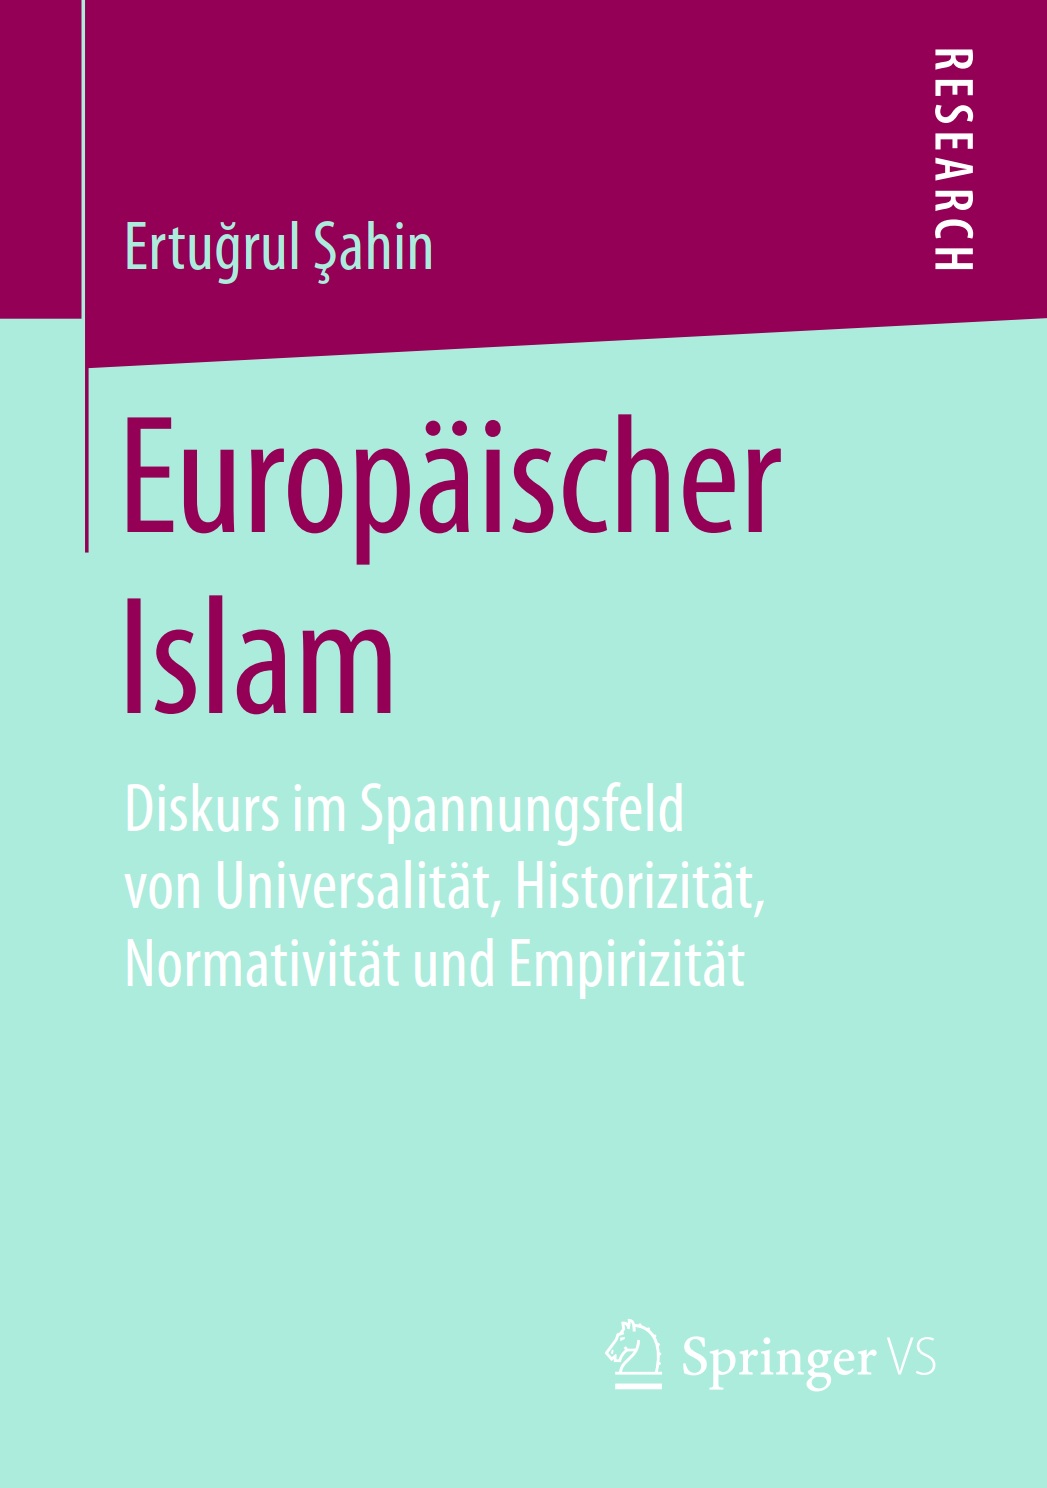 Europäischer Islam